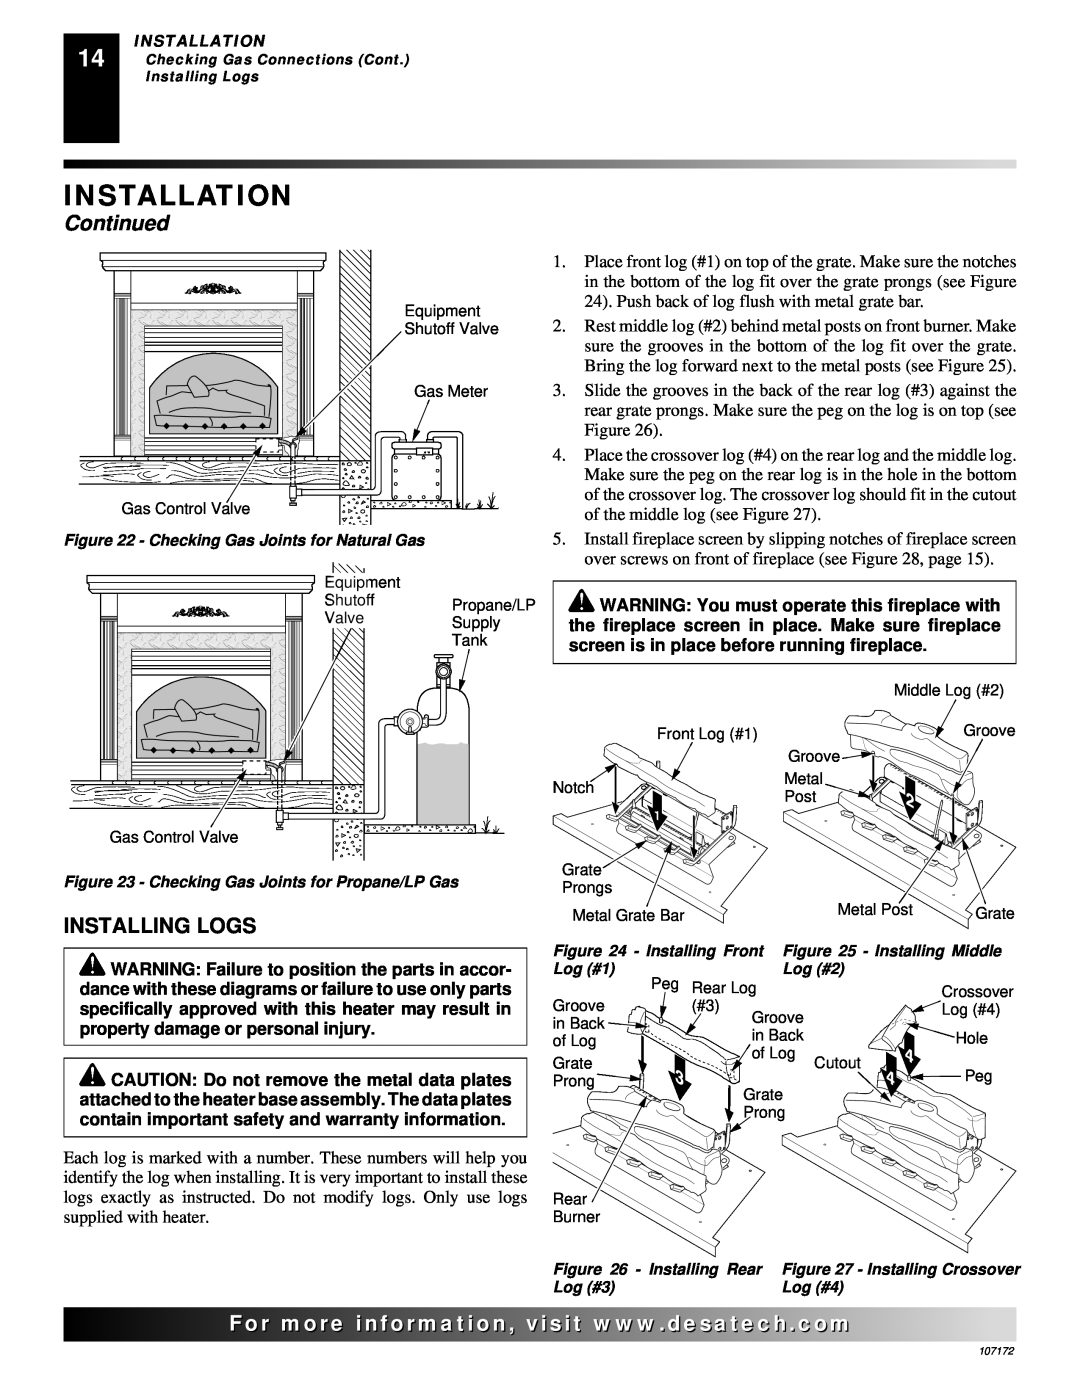 Desa EFS33NR, VSGF33PR installation manual Installing Logs, Installation, Continued 